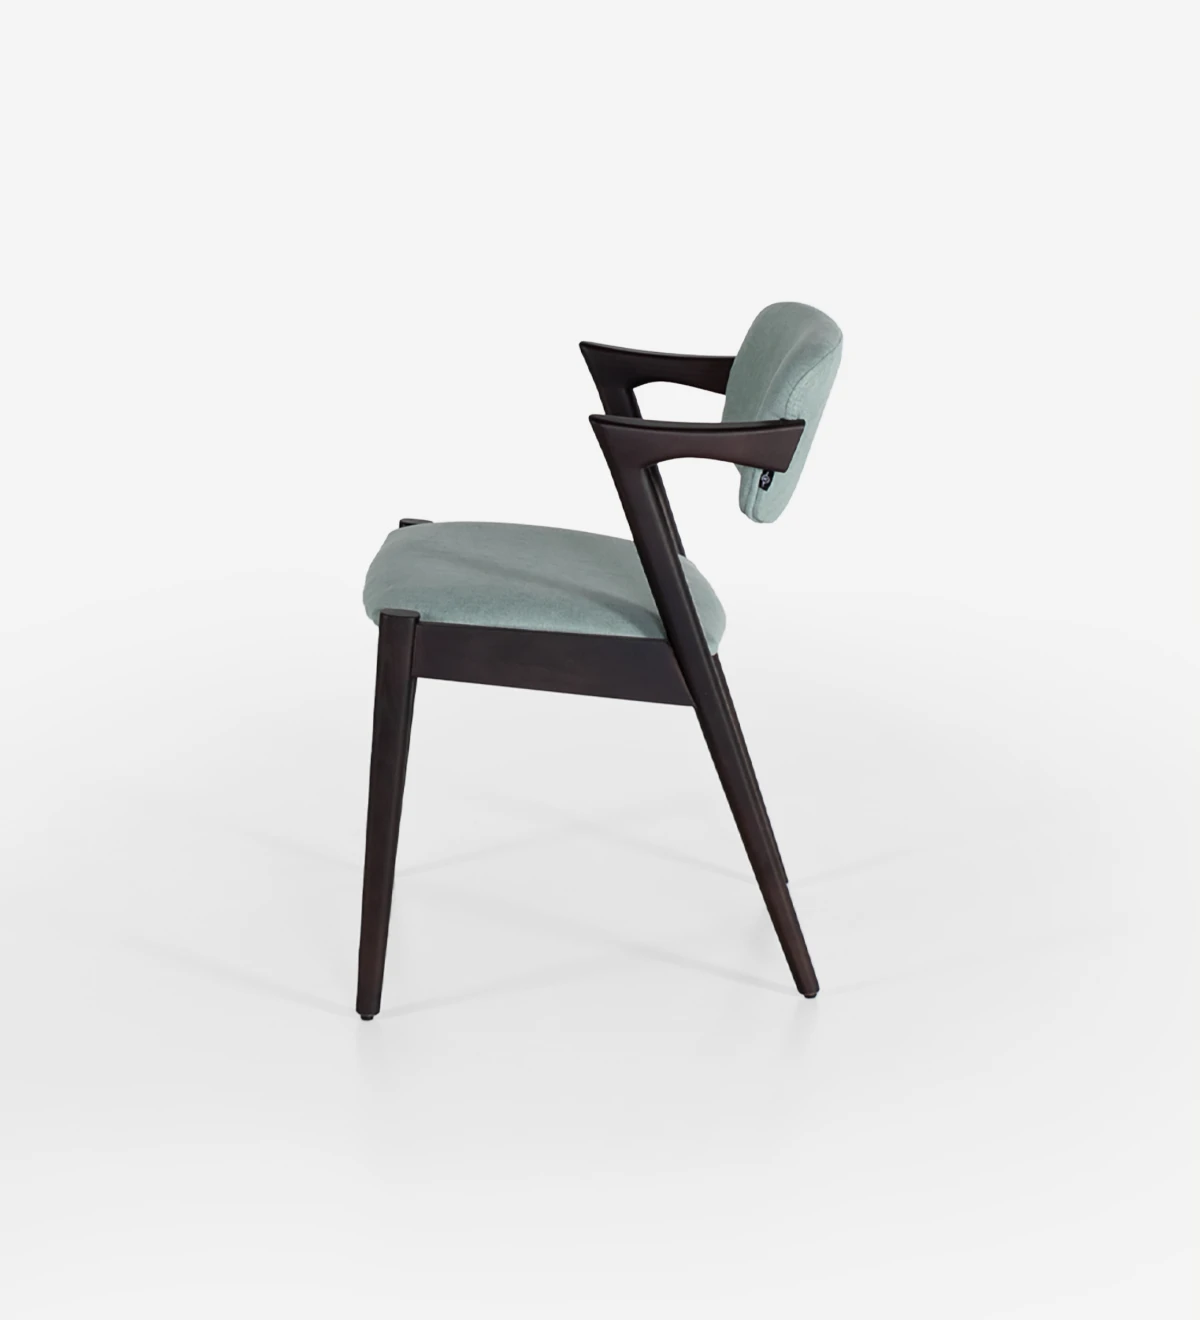 Chaise en bois de frêne brun foncé avec assise et dossier rembourrés en tissu.